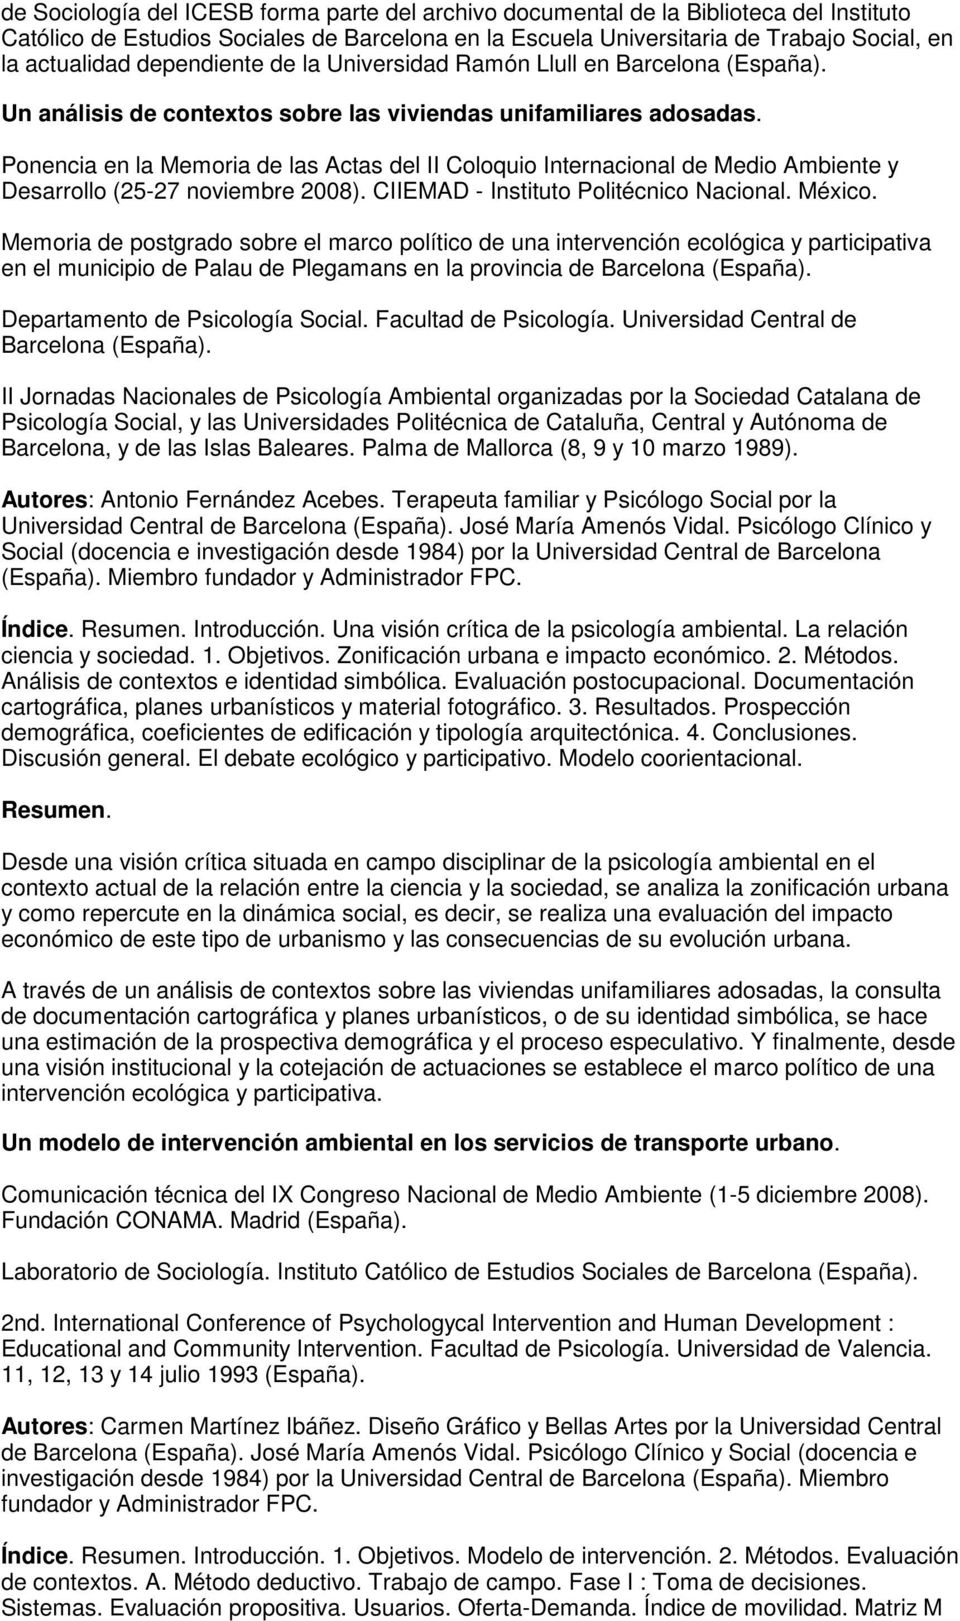 Ponencia en la Memoria de las Actas del II Coloquio Internacional de Medio Ambiente y Desarrollo (25-27 noviembre 2008). CIIEMAD - Instituto Politécnico Nacional. México.